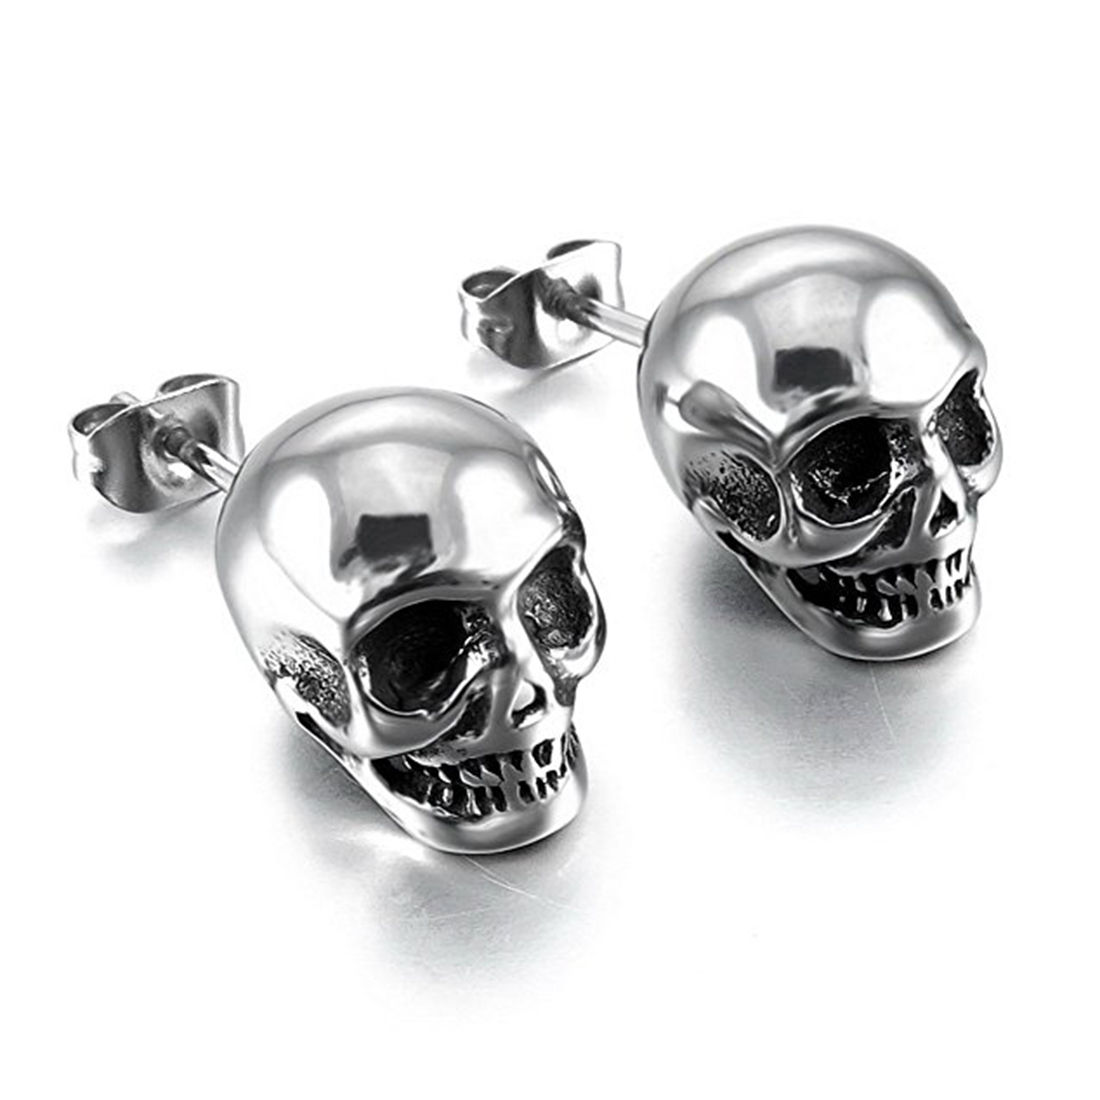 Shop Skull Stud Earrings For Men And Women GTHIC 56 OFF